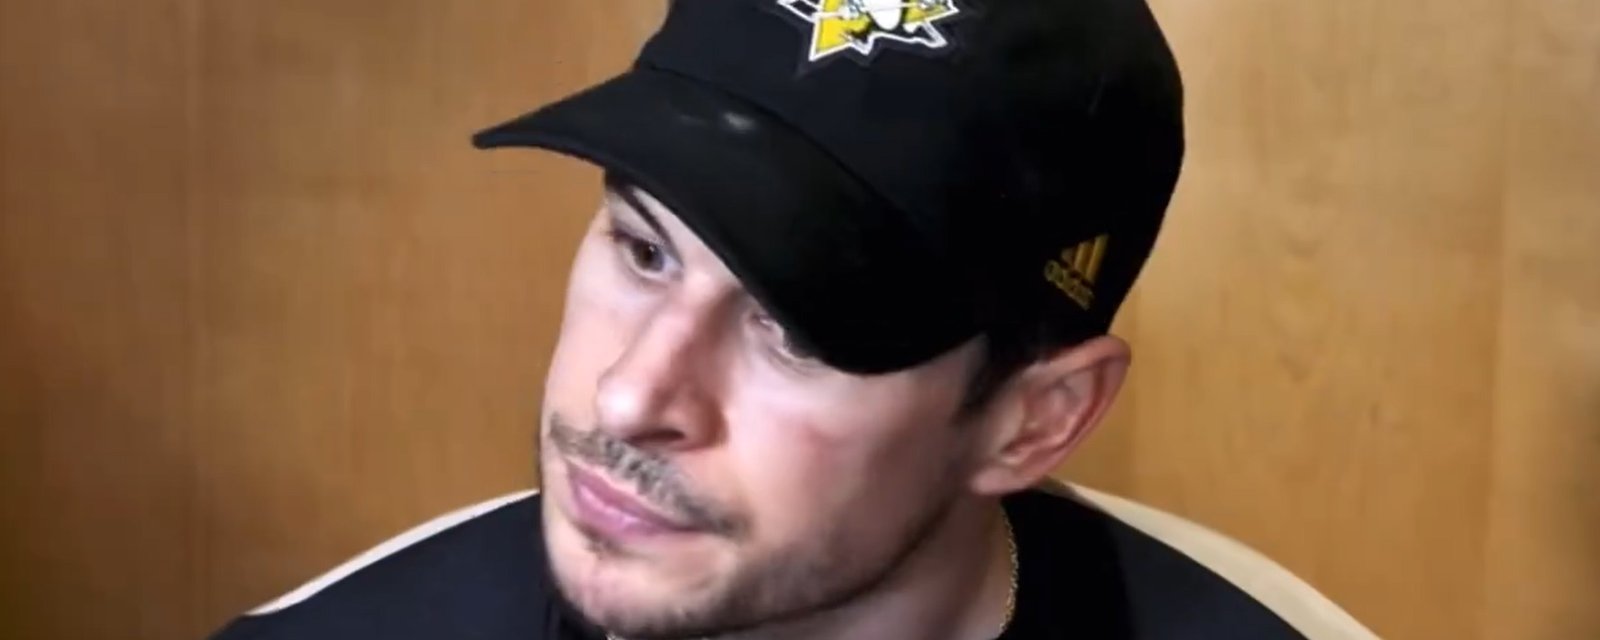 Sidney Crosby semble être frustré par la situation à Pittsburgh